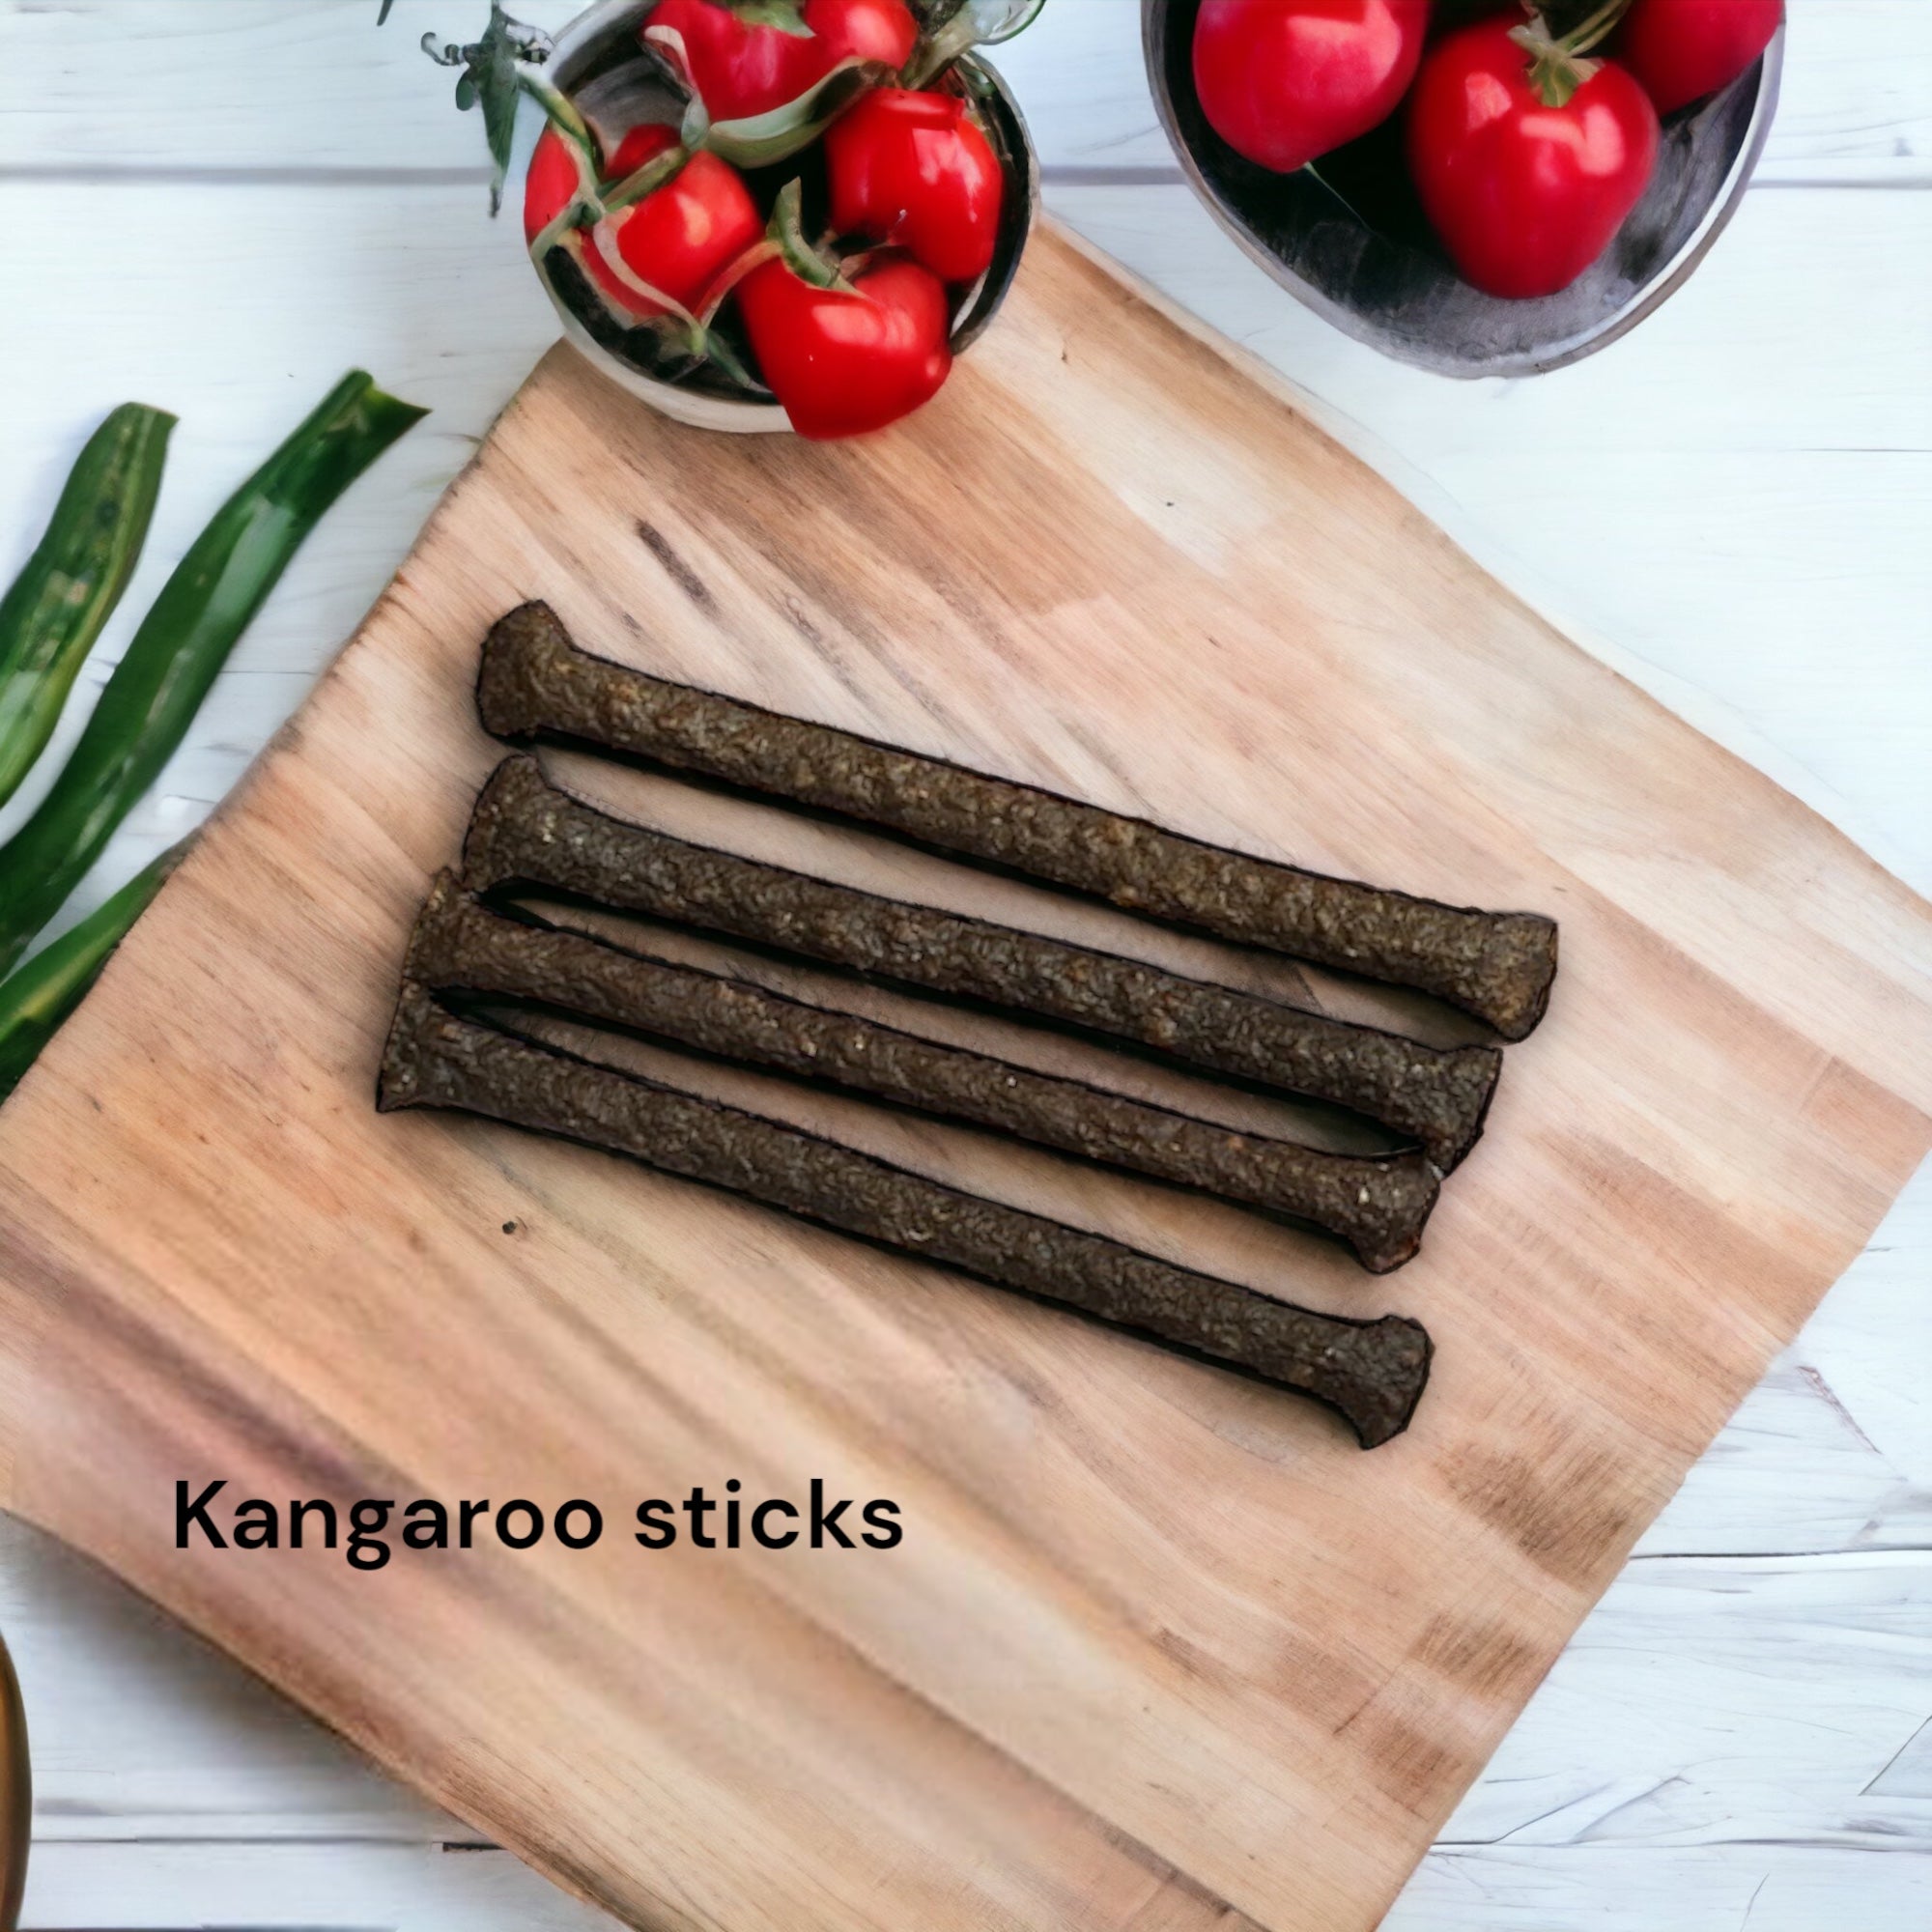 Kangaroo sticks